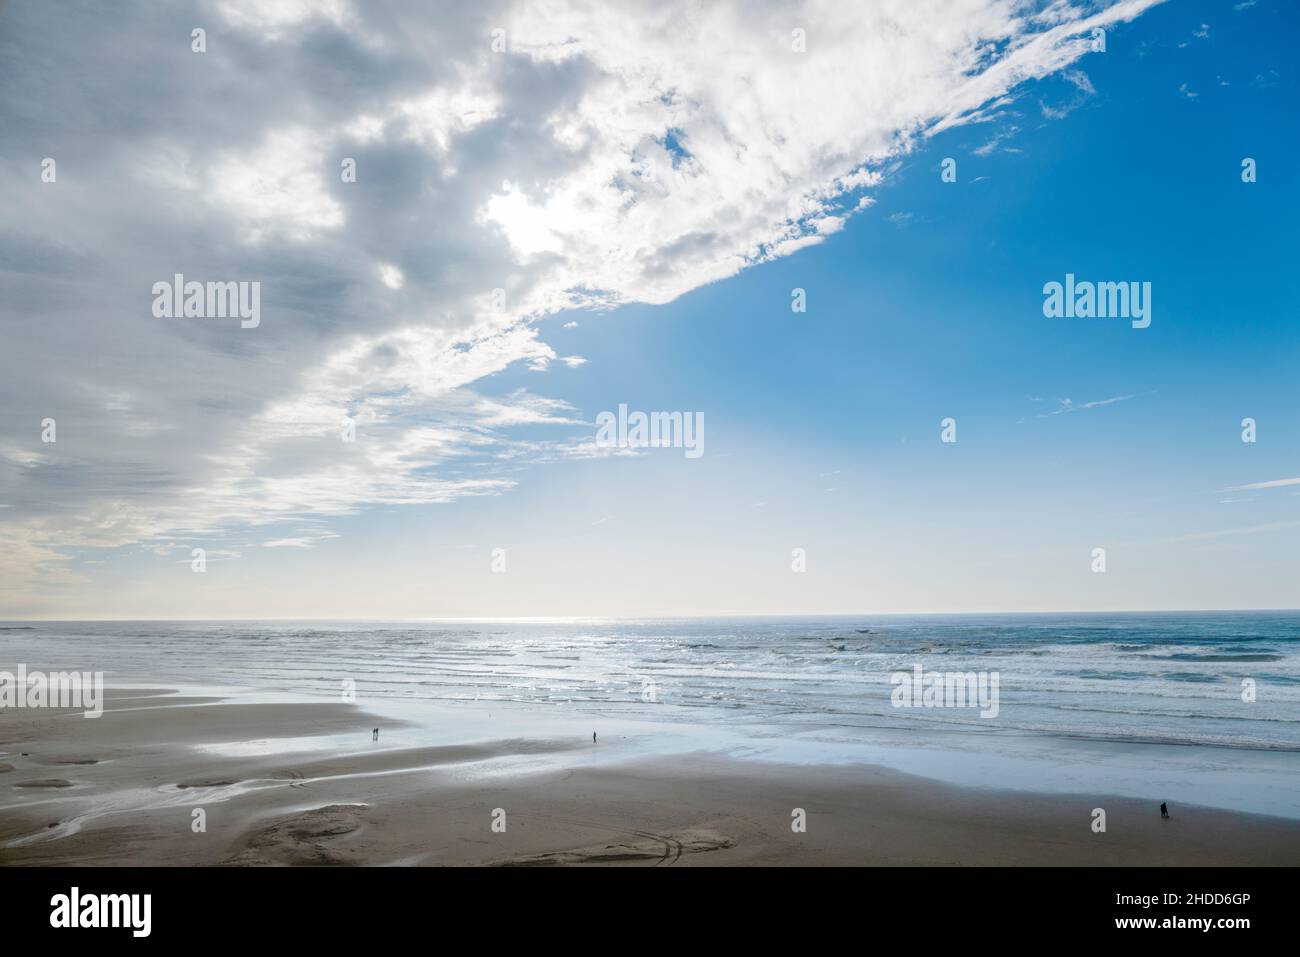 Menschen, die am Strand spazieren; Sturm aufräumen; Pazifischer Ozean; Newport; Oregon; USA Stockfoto